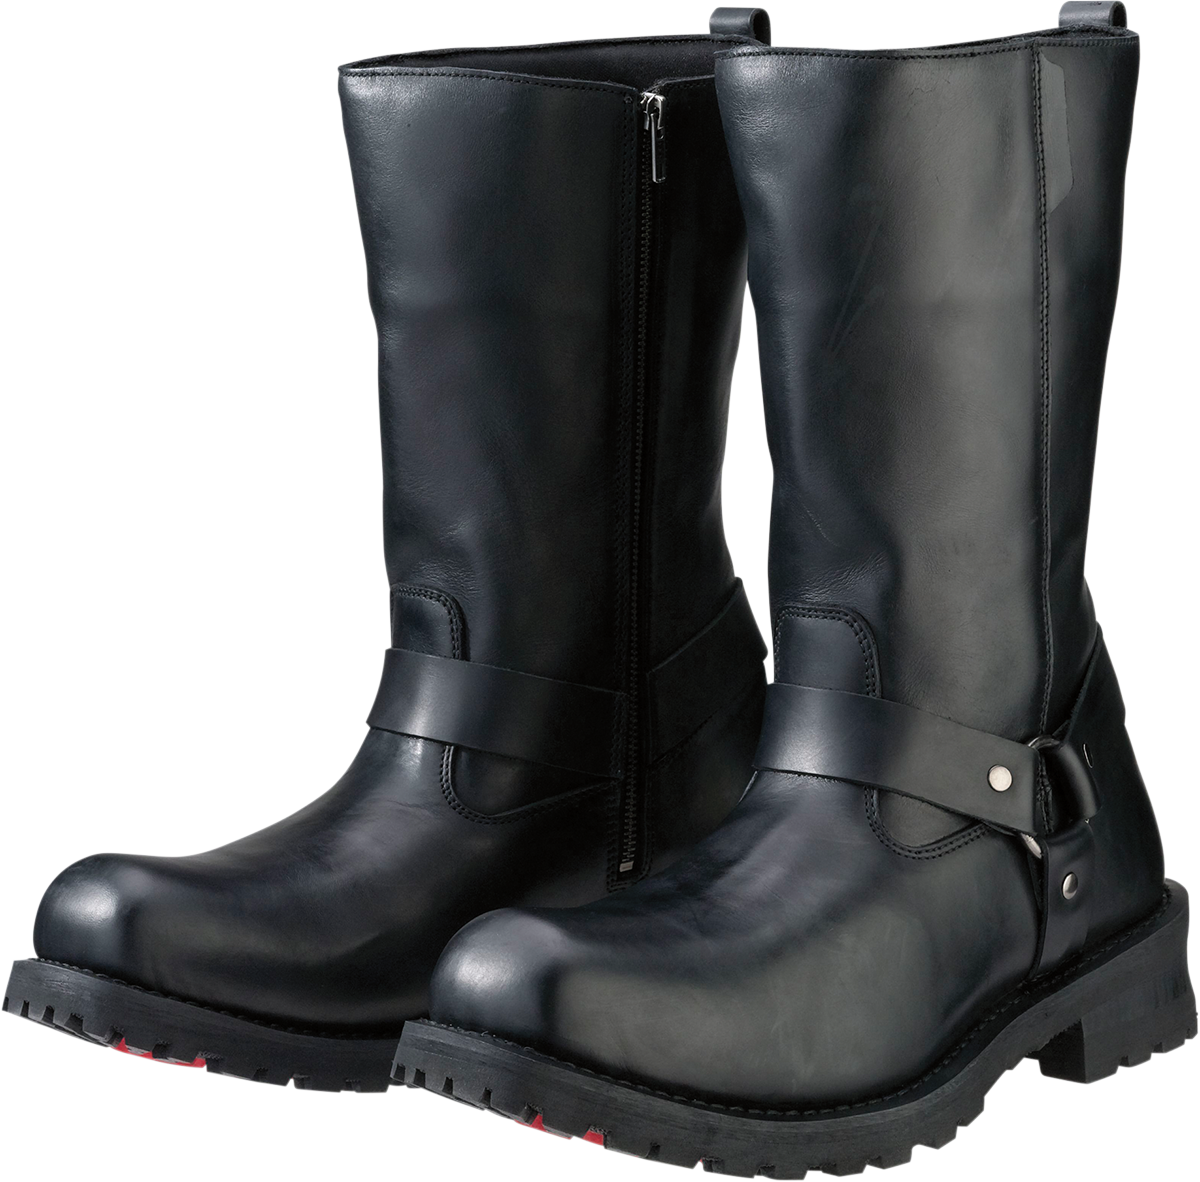 Z1R Riot Boots - Black - US 8 3403-0753